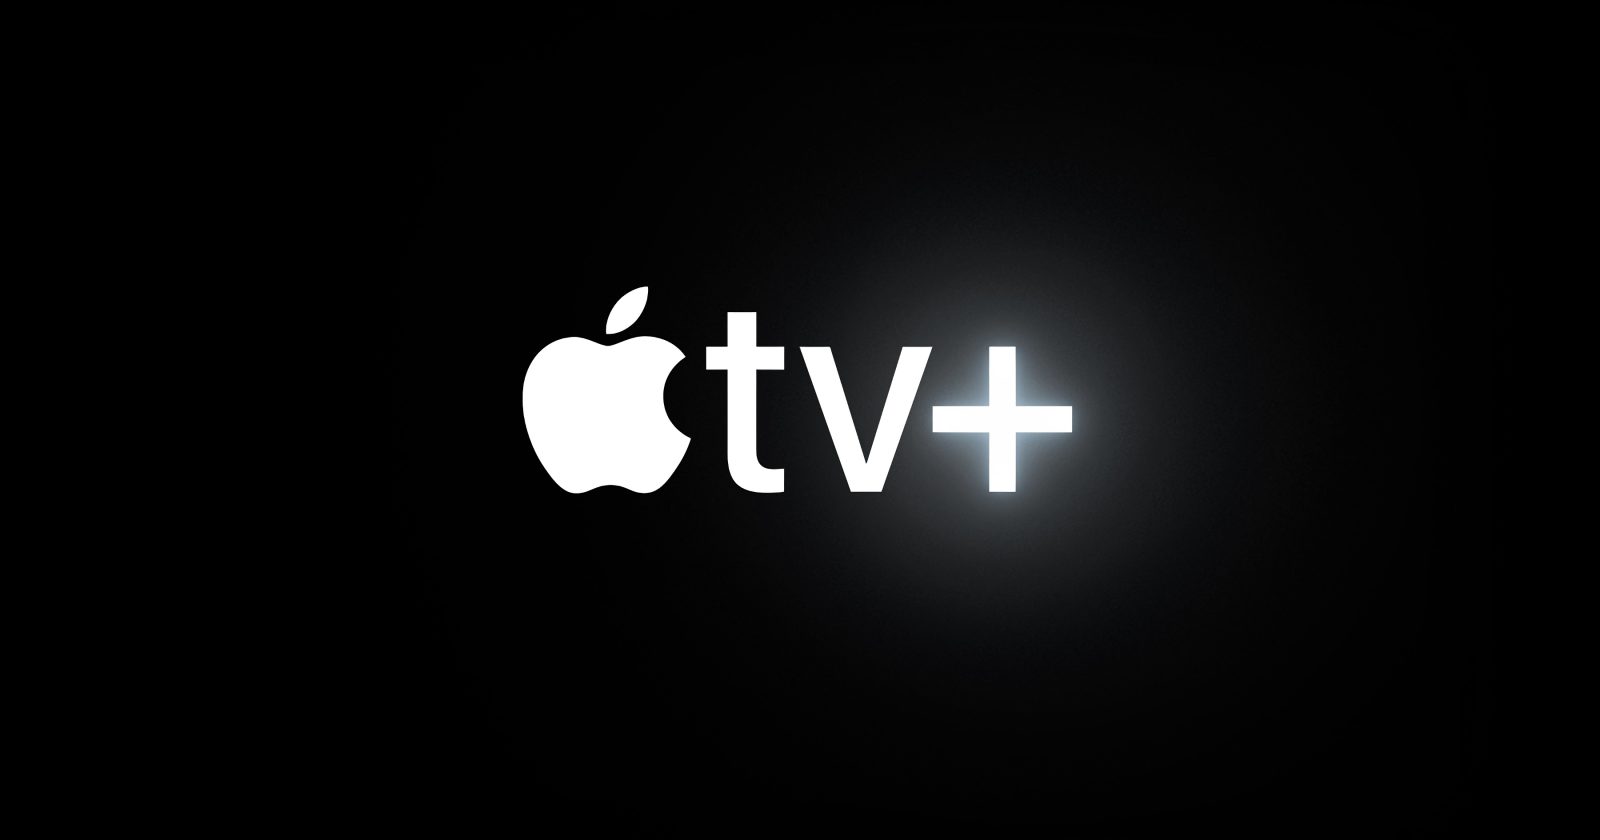 Apple ищет способы запустить TV+ и многое другое в Китае, говорится в отчете